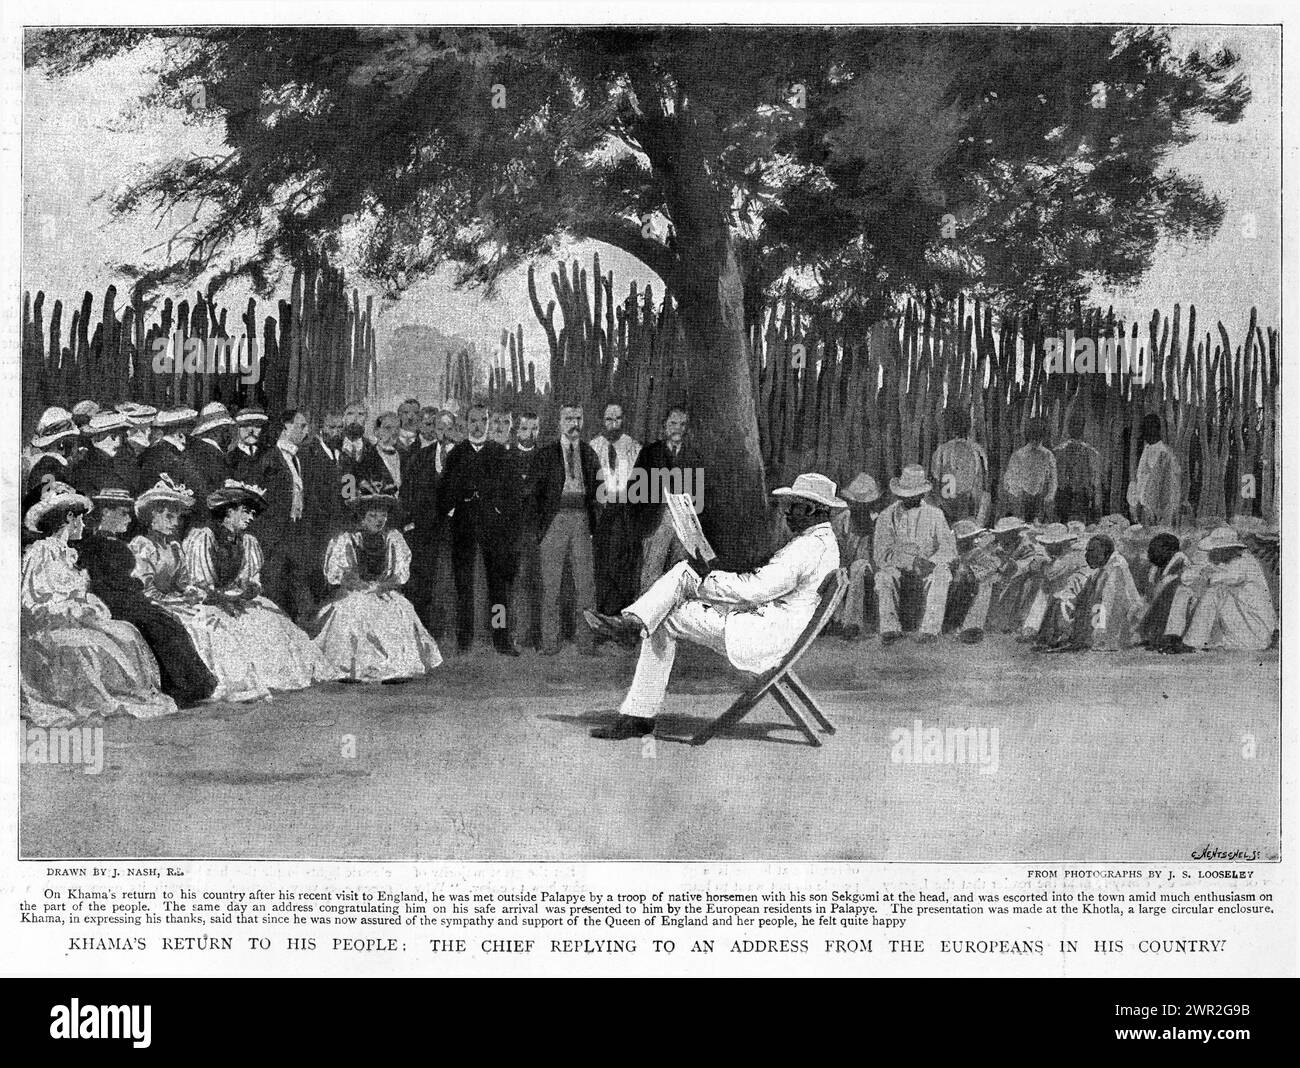 Gravure du roi Khama III du Botswana répondant à une allocution des Européens dans son pays, vers 1896 Banque D'Images